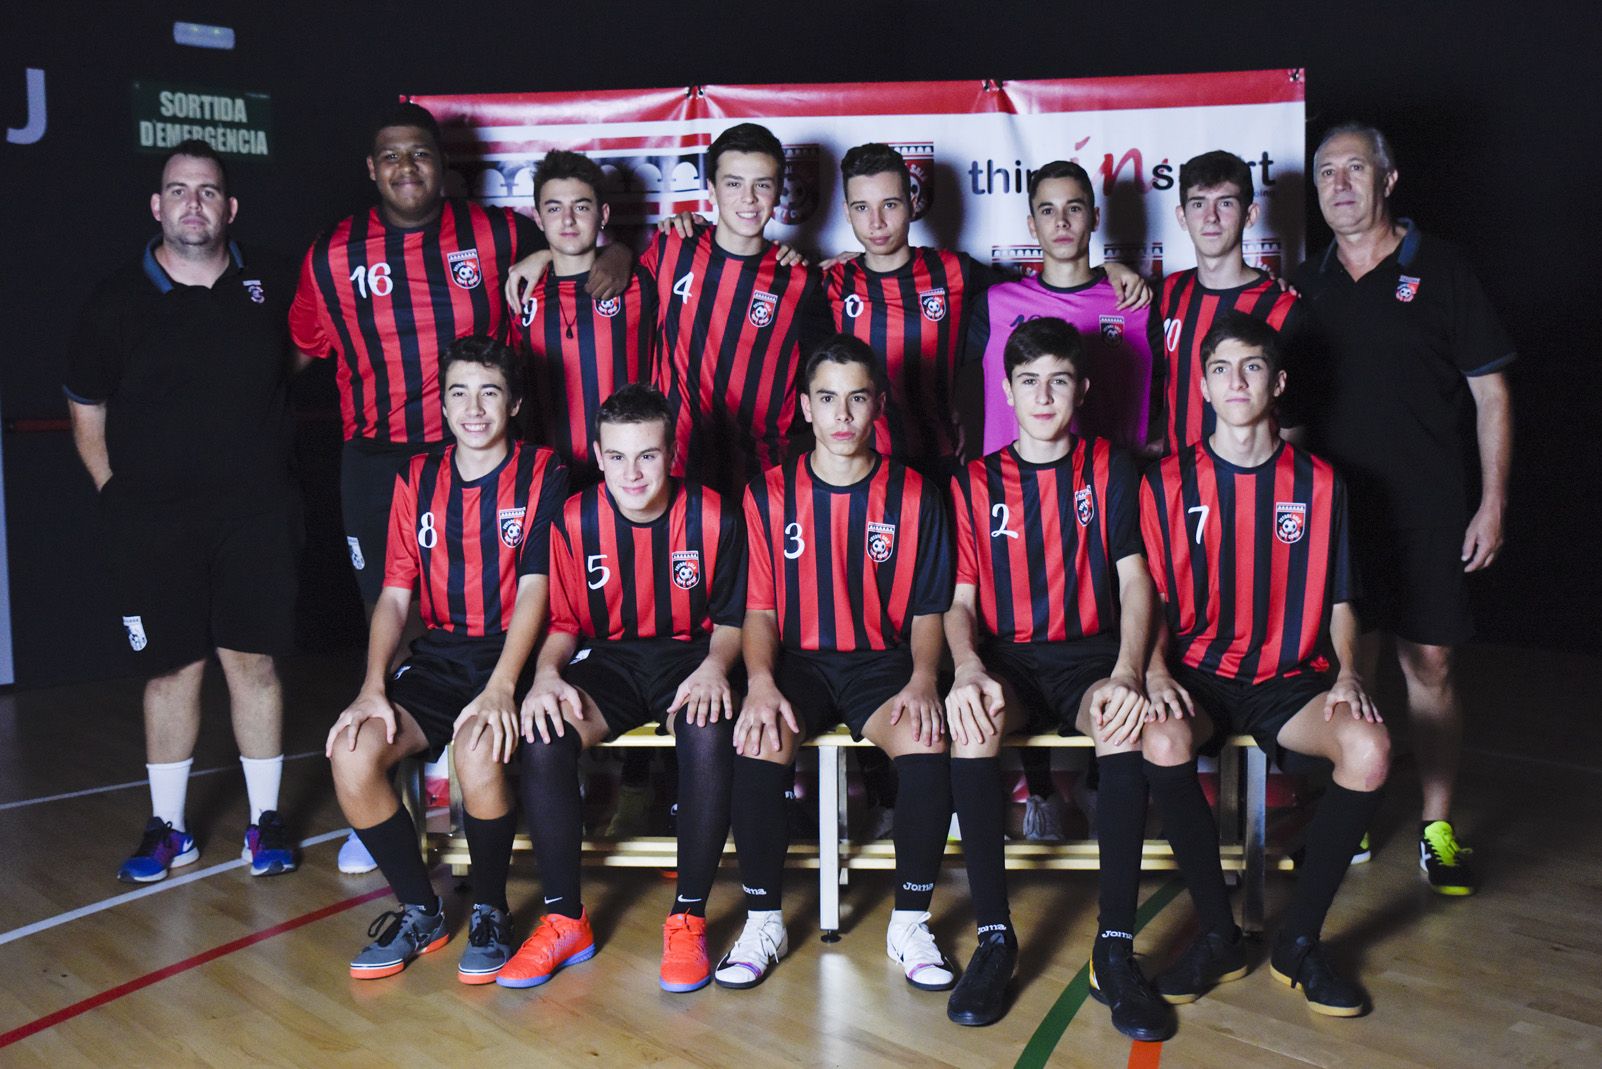 Presentació de ls equips de Futbol Sala Sant Cugat. Foto: Bernat Millet.